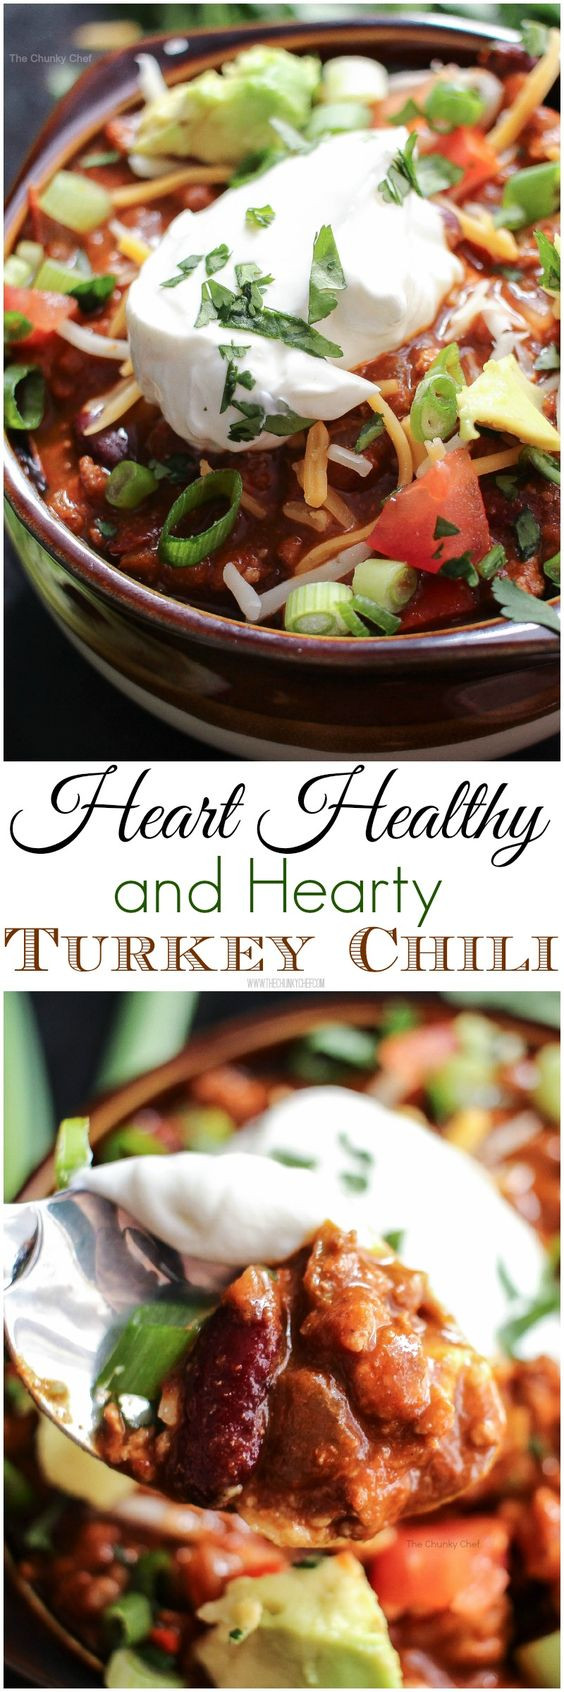 Heart Healthy Chili Recipes Heart Healthy Turkey Chili Recipe